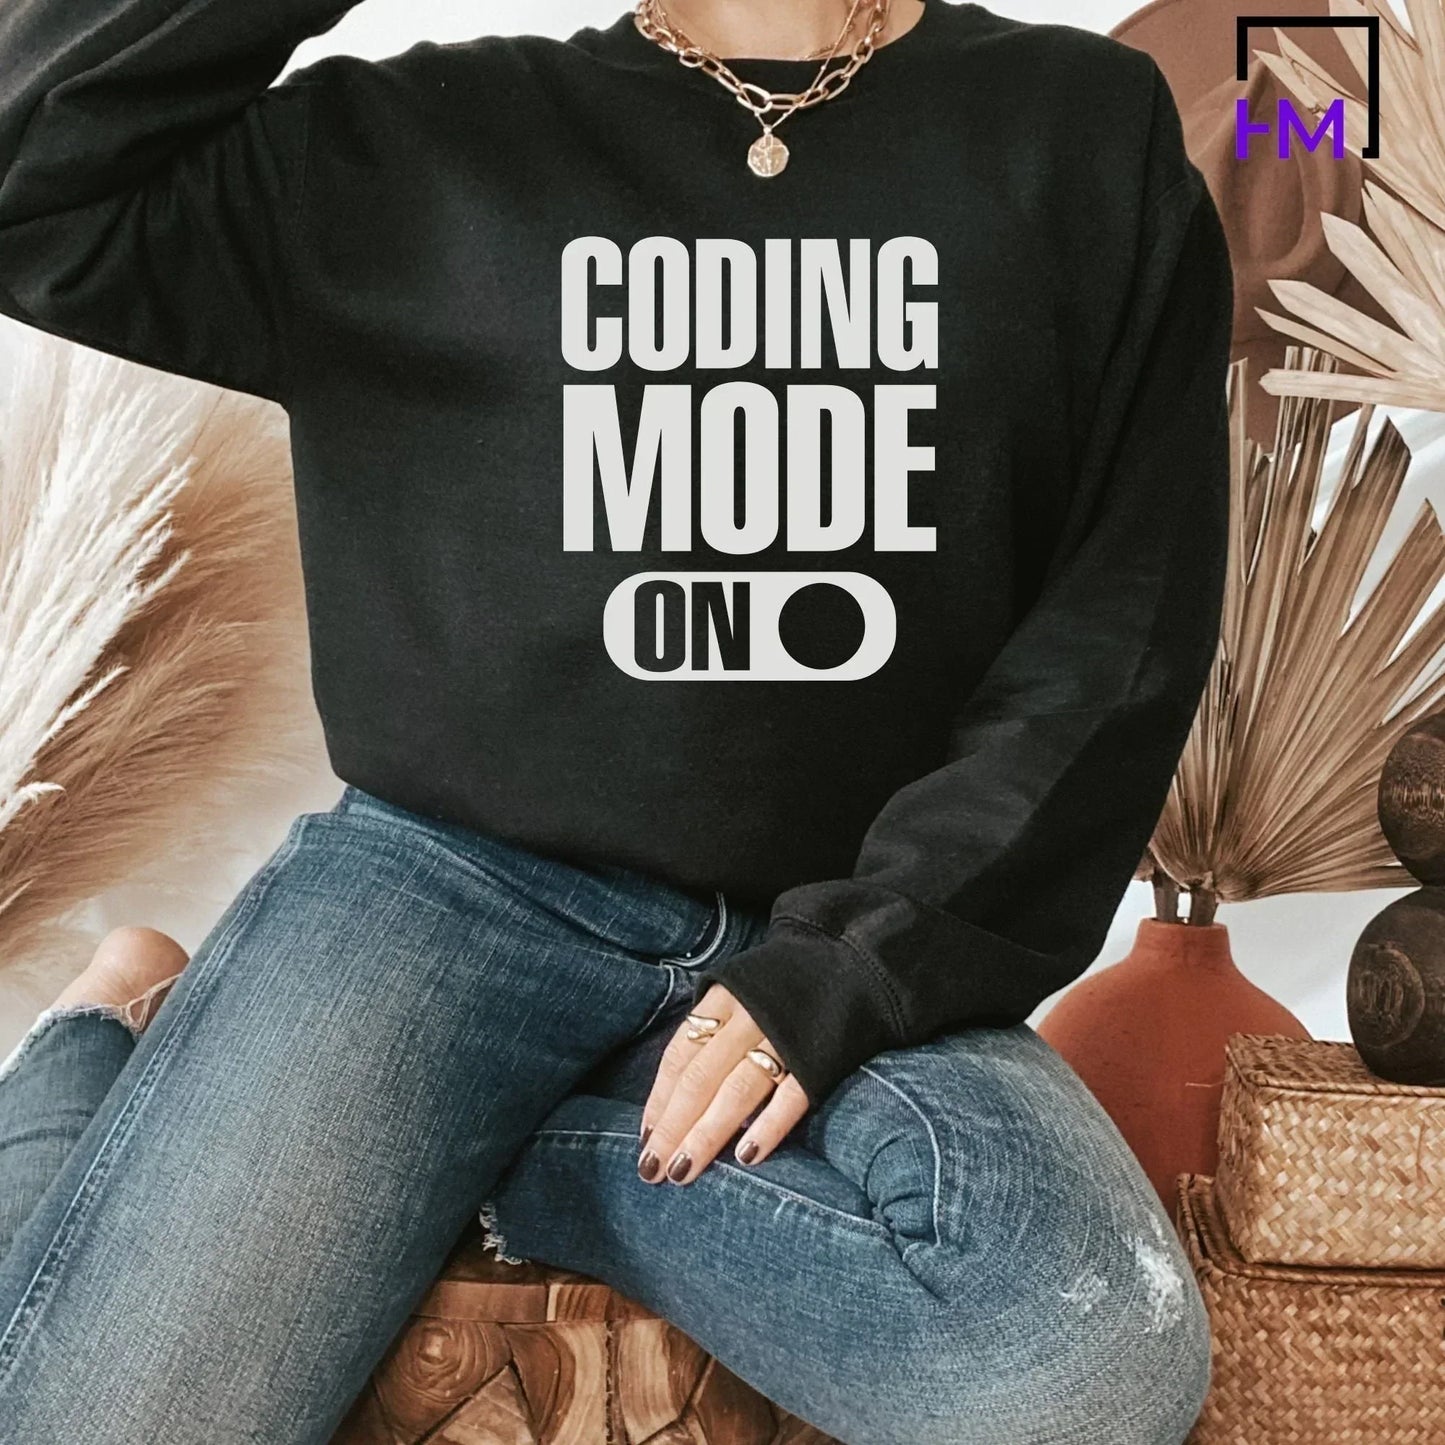 Coding Shirt, Technology Teacher Shirt, Teacher Gifts, Programmer Shirt, Gift for Programmer, STEM Teacher Shirt,Computer Science Gift Shirt